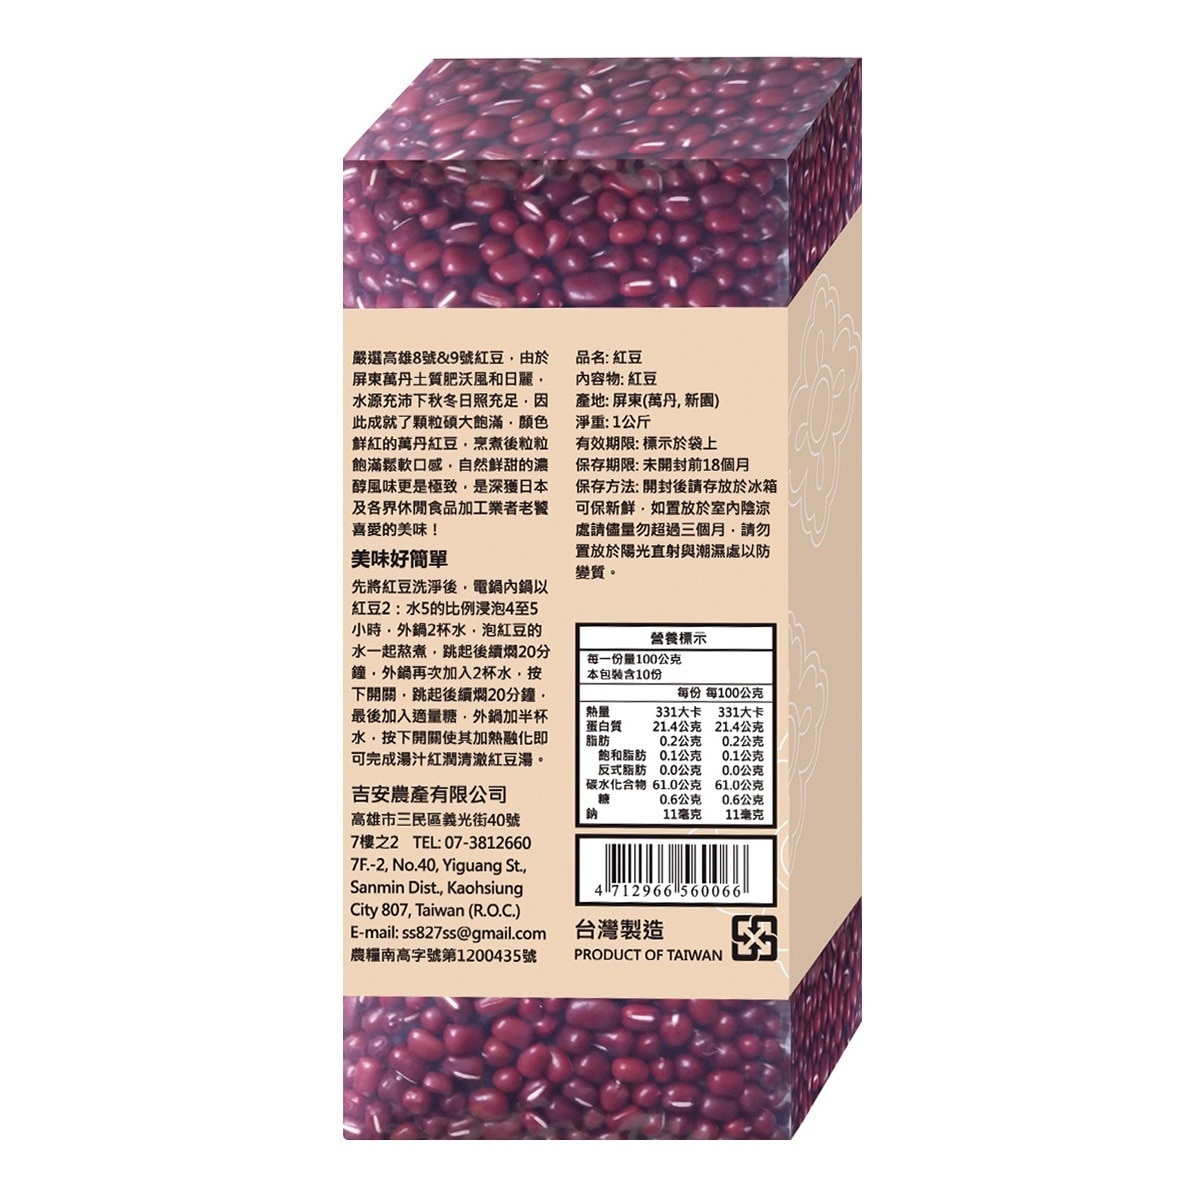 屏東紅豆 1公斤